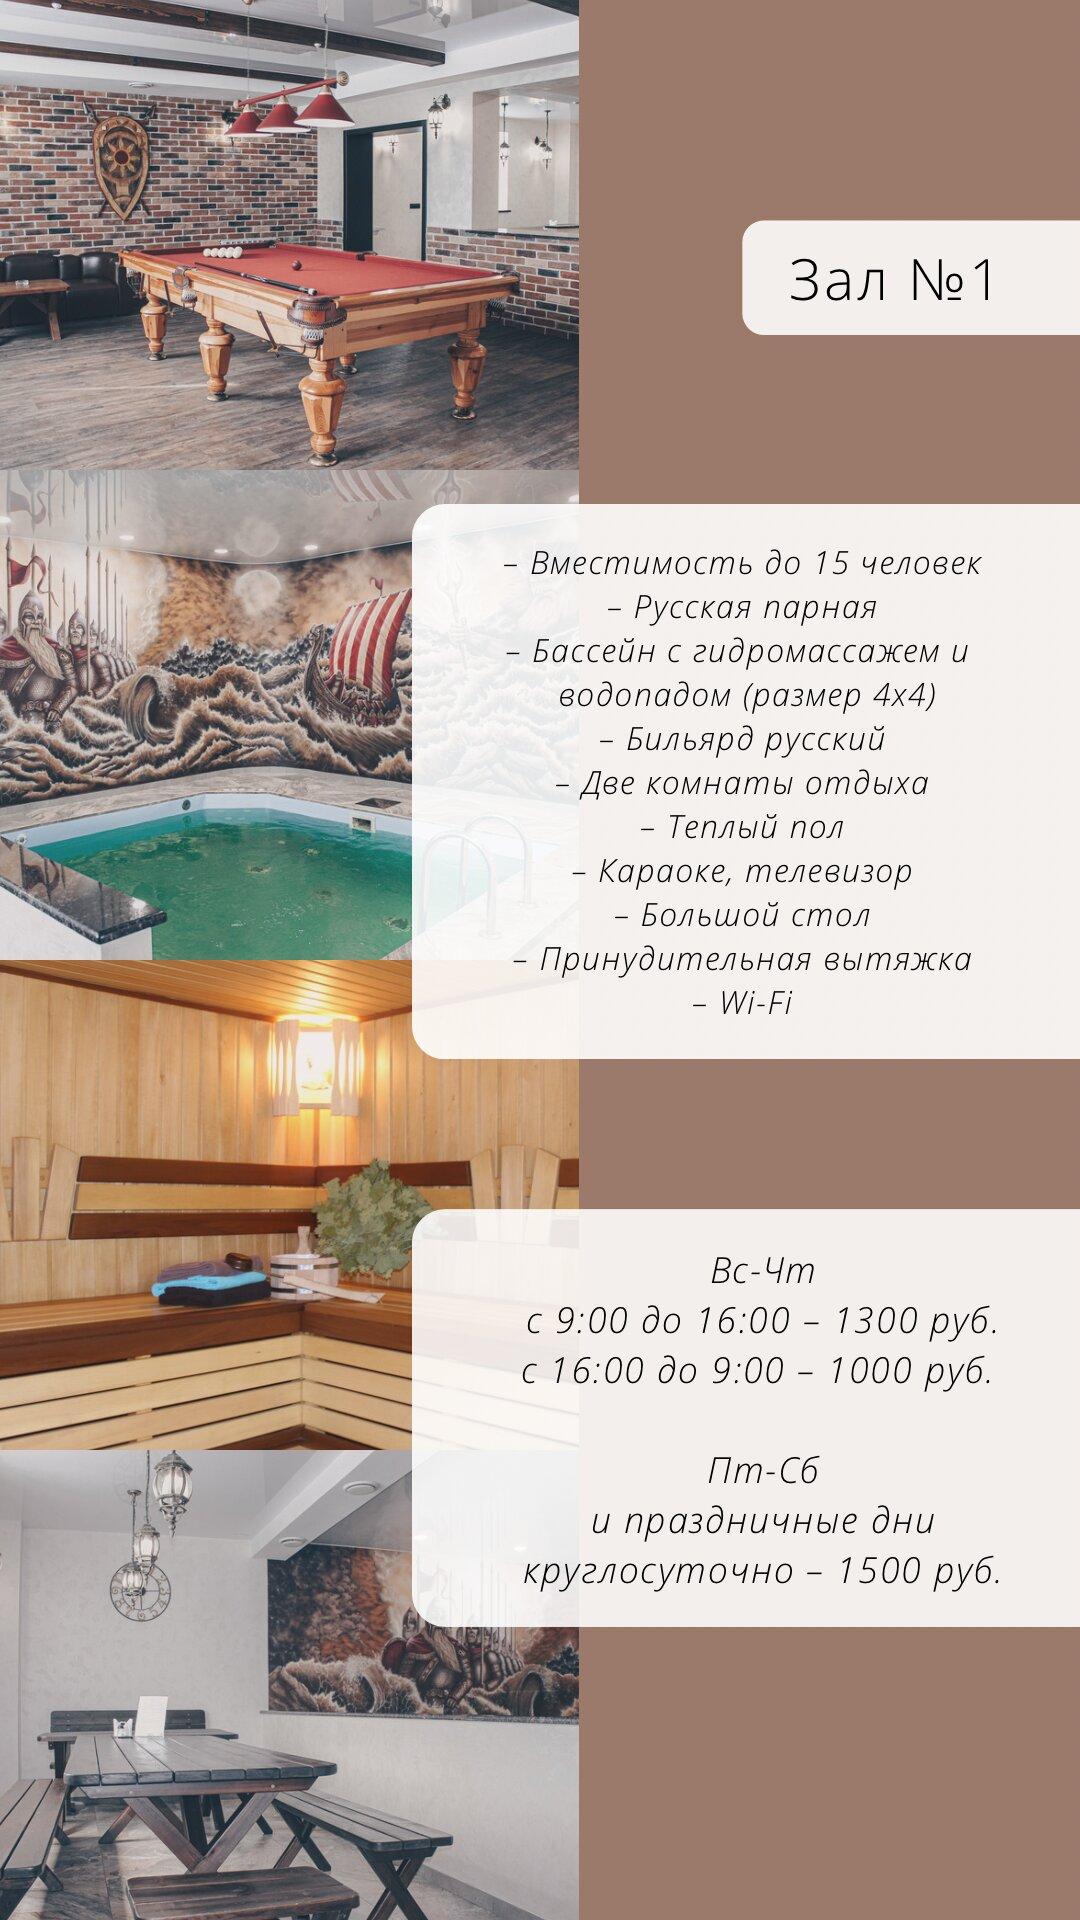 Самарские бани тольятти